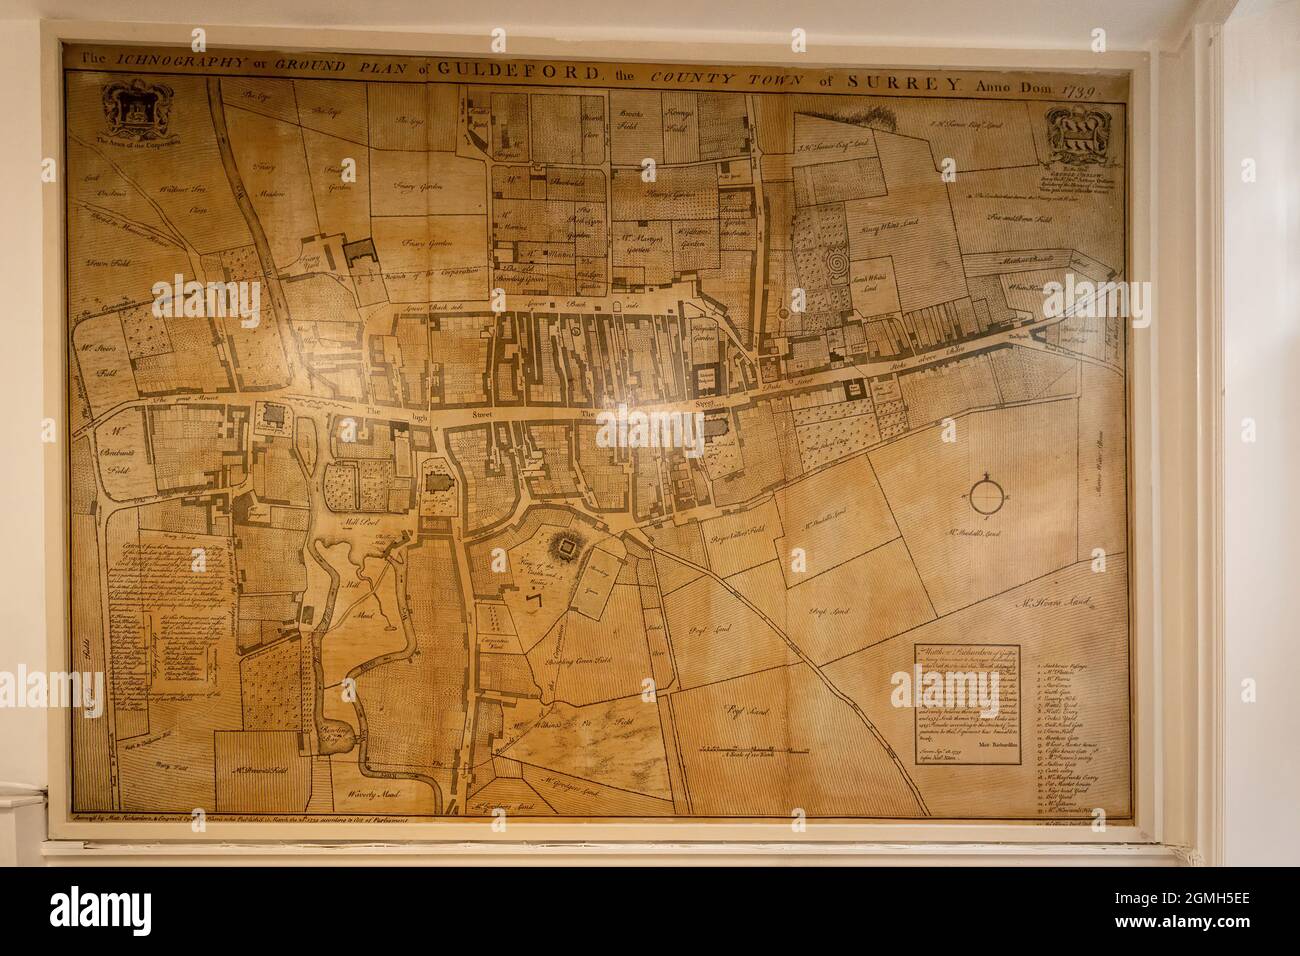 Innenraum des Guildford Museum mit lokalen historischen Ausstellungen, Surrey, England, Großbritannien. Eine alte Stadtkarte, Ichnographie oder Grundrißplan, AD1739 Stockfoto